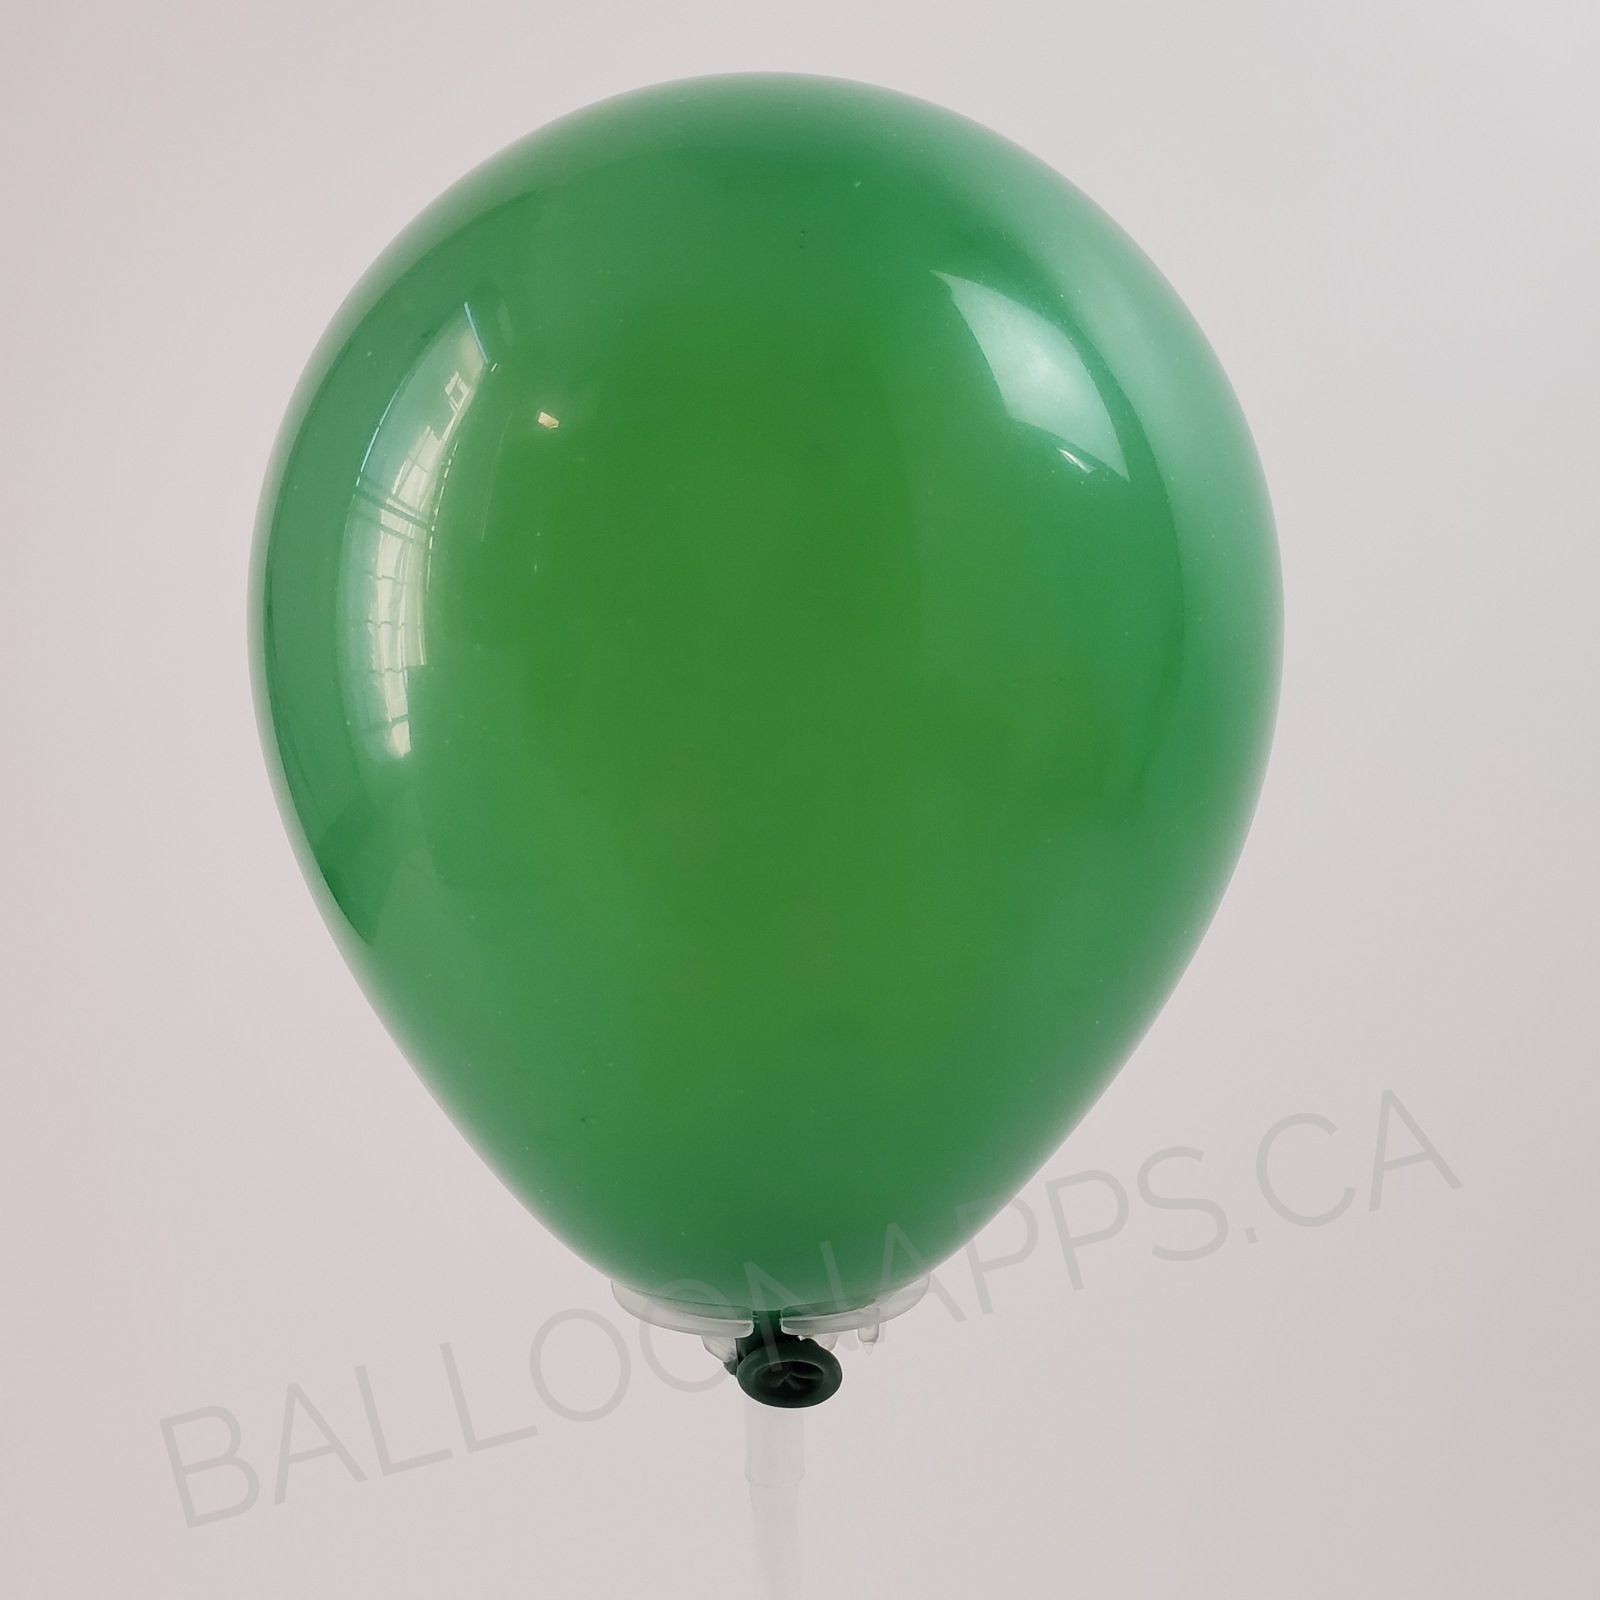 balloon texture Qualatex 350 Standard Green